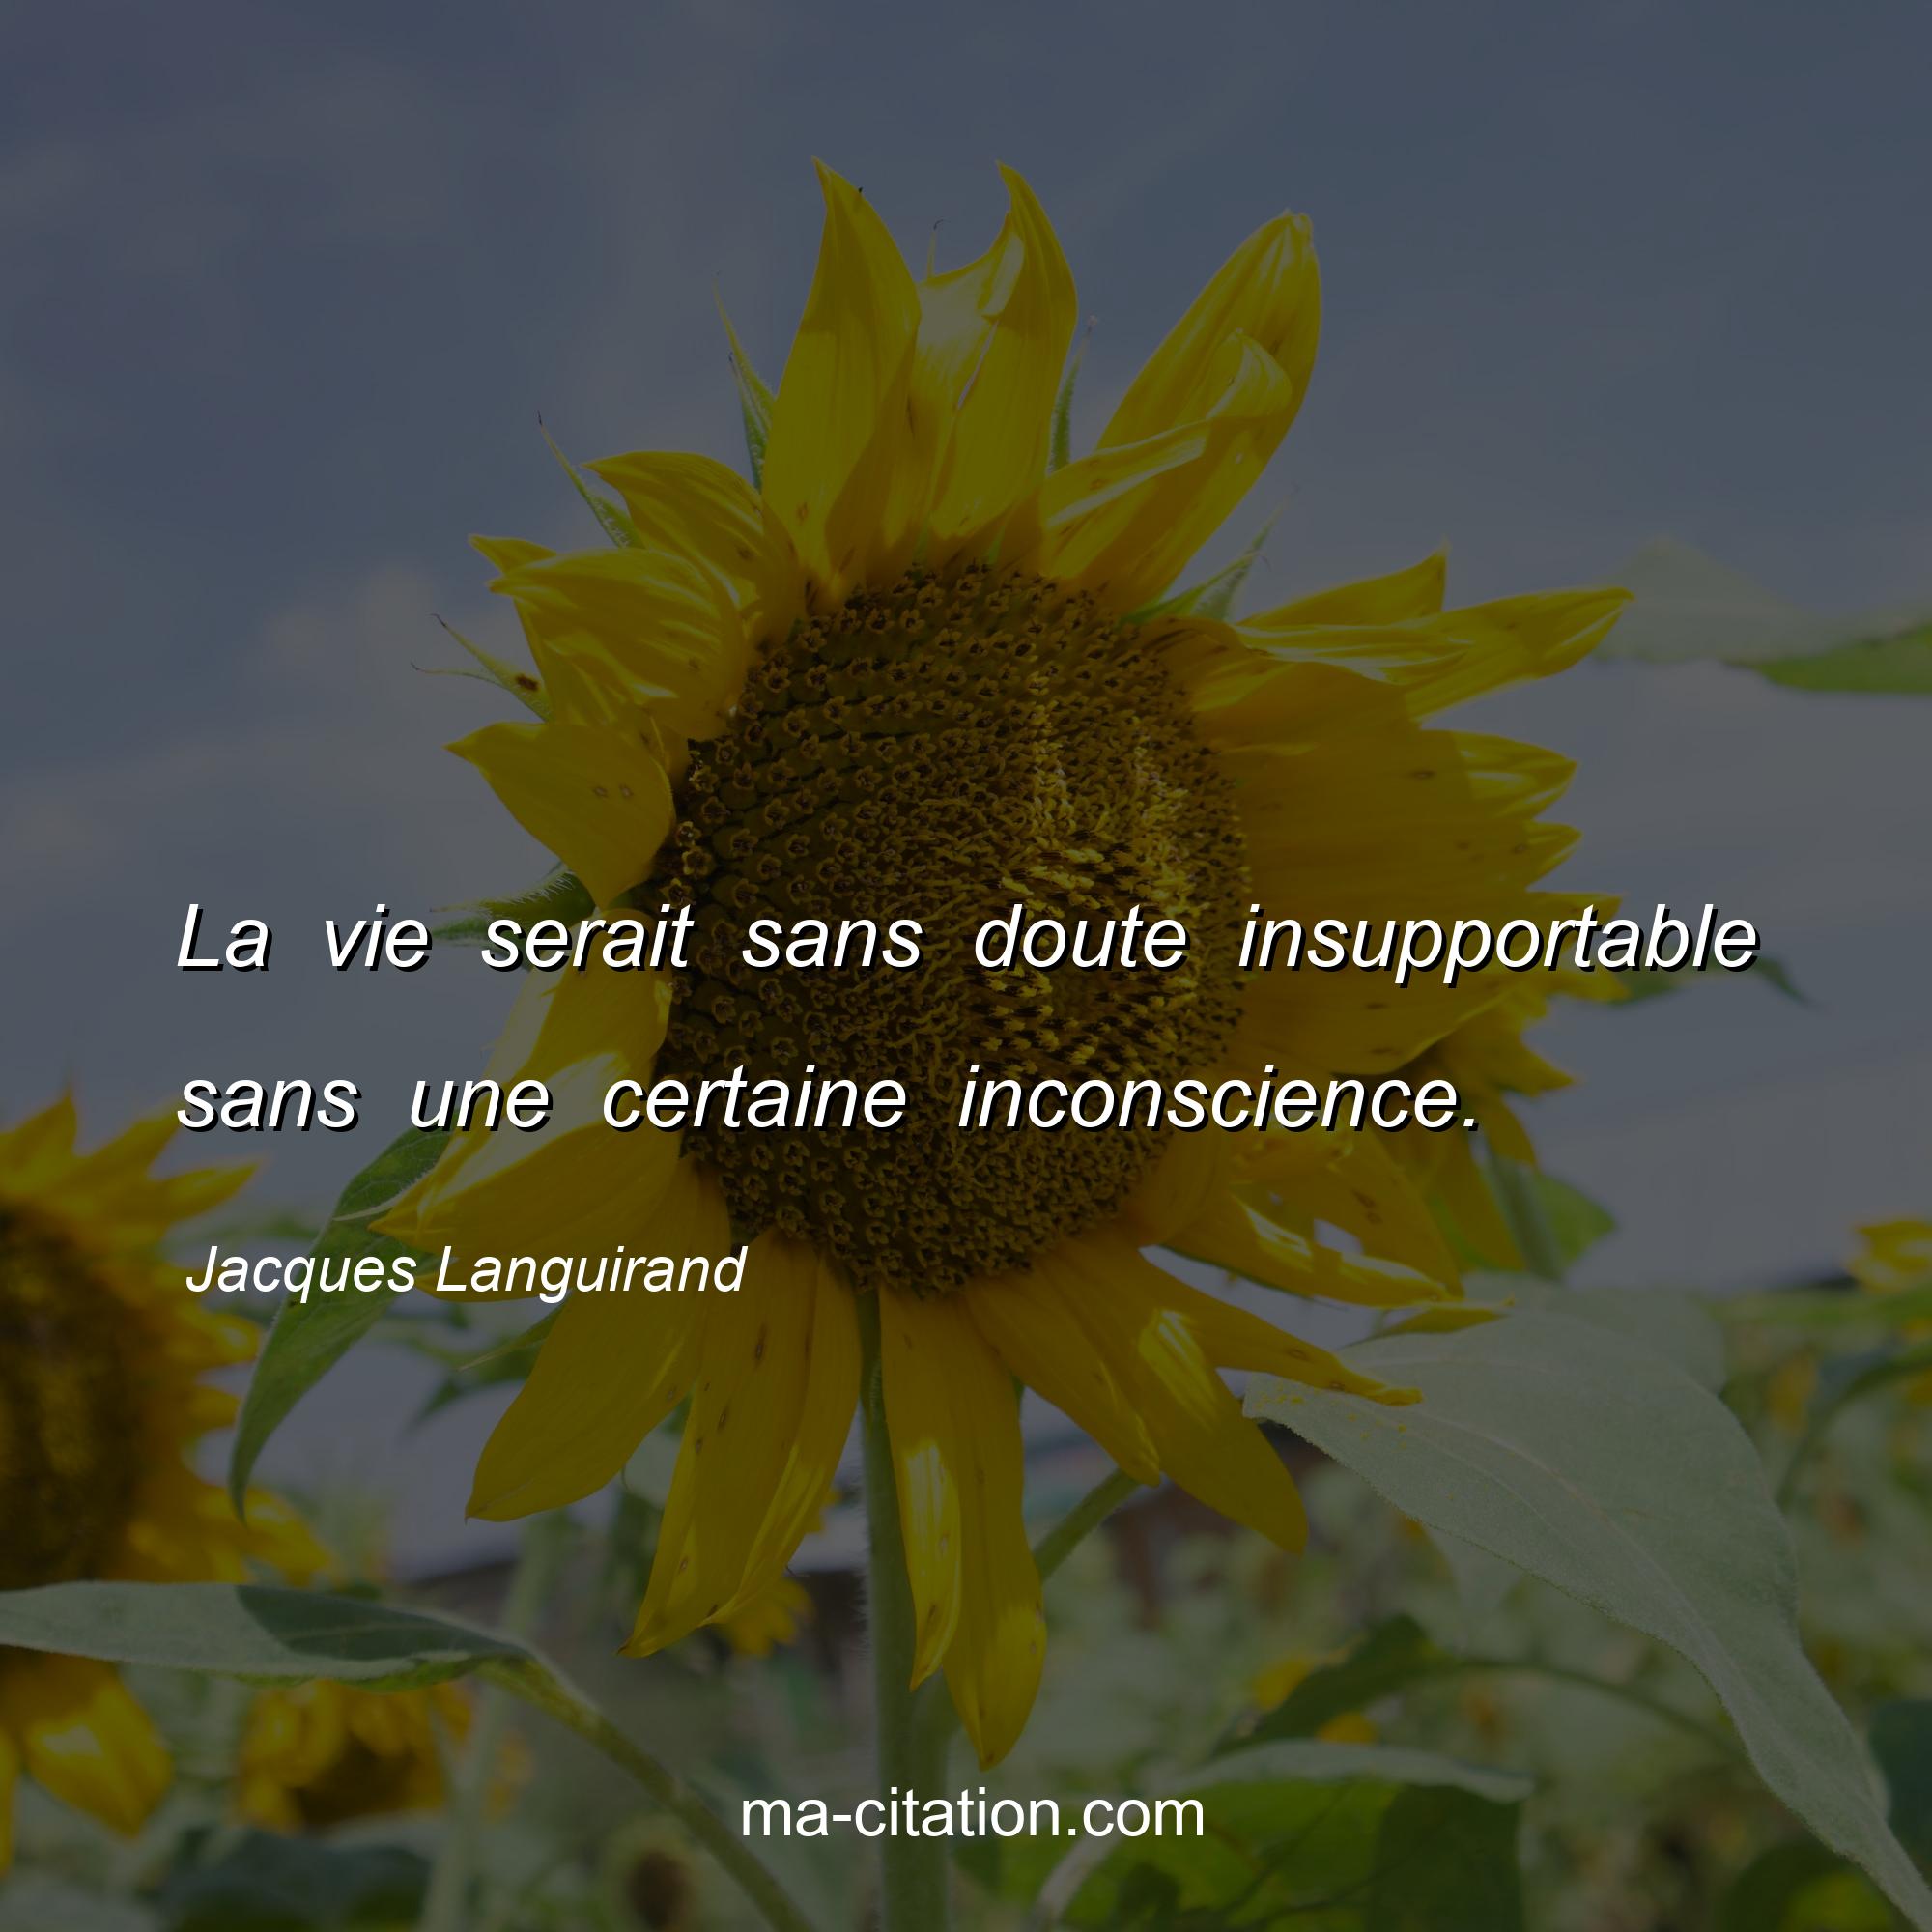 Jacques Languirand : La vie serait sans doute insupportable sans une certaine inconscience.